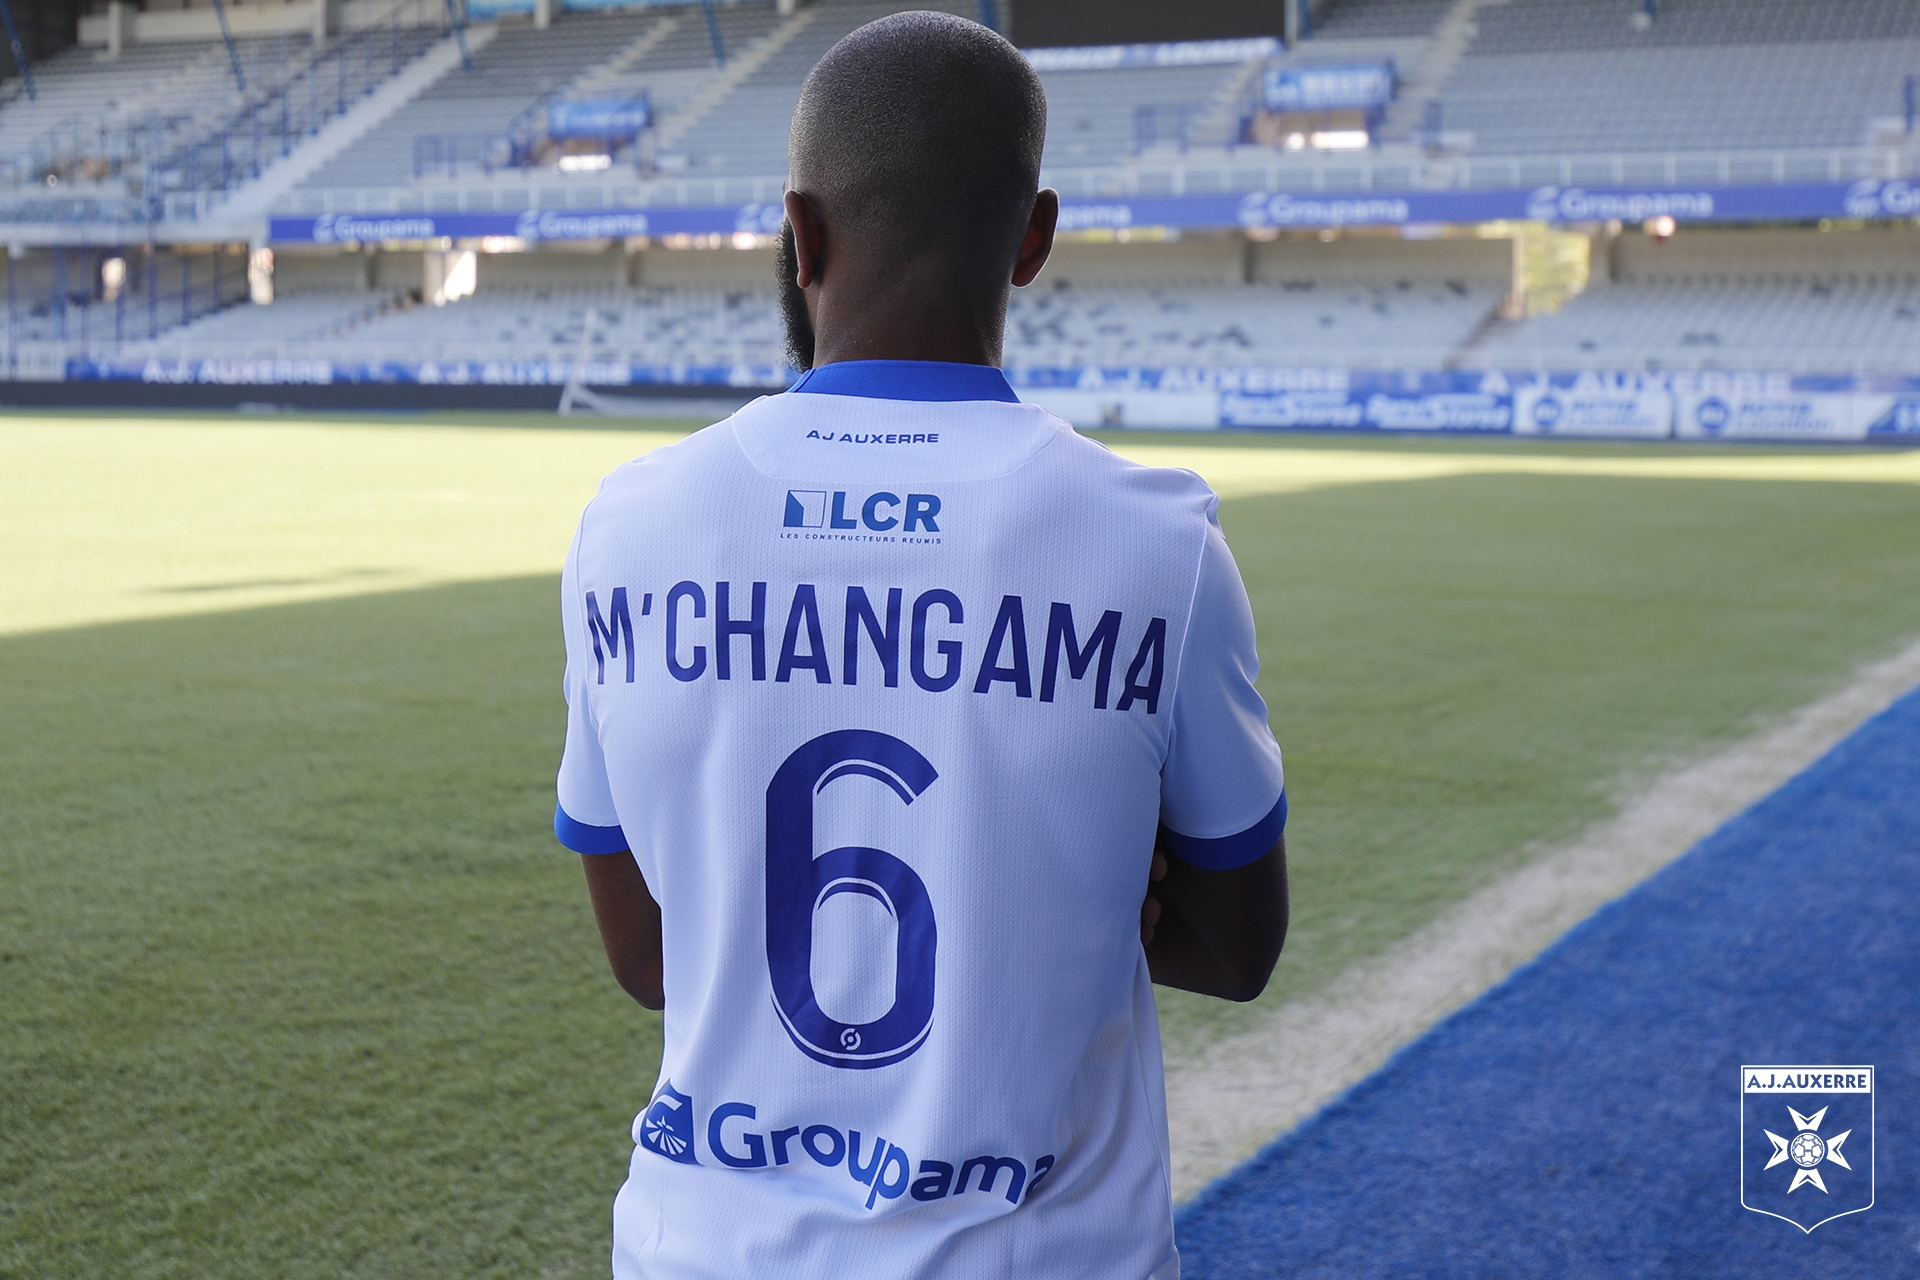 Mchangama, Mchangama, des offres avec « des chiffres qui donnent mal à la tête », Comoros Football 269 | Portail du football des Comores